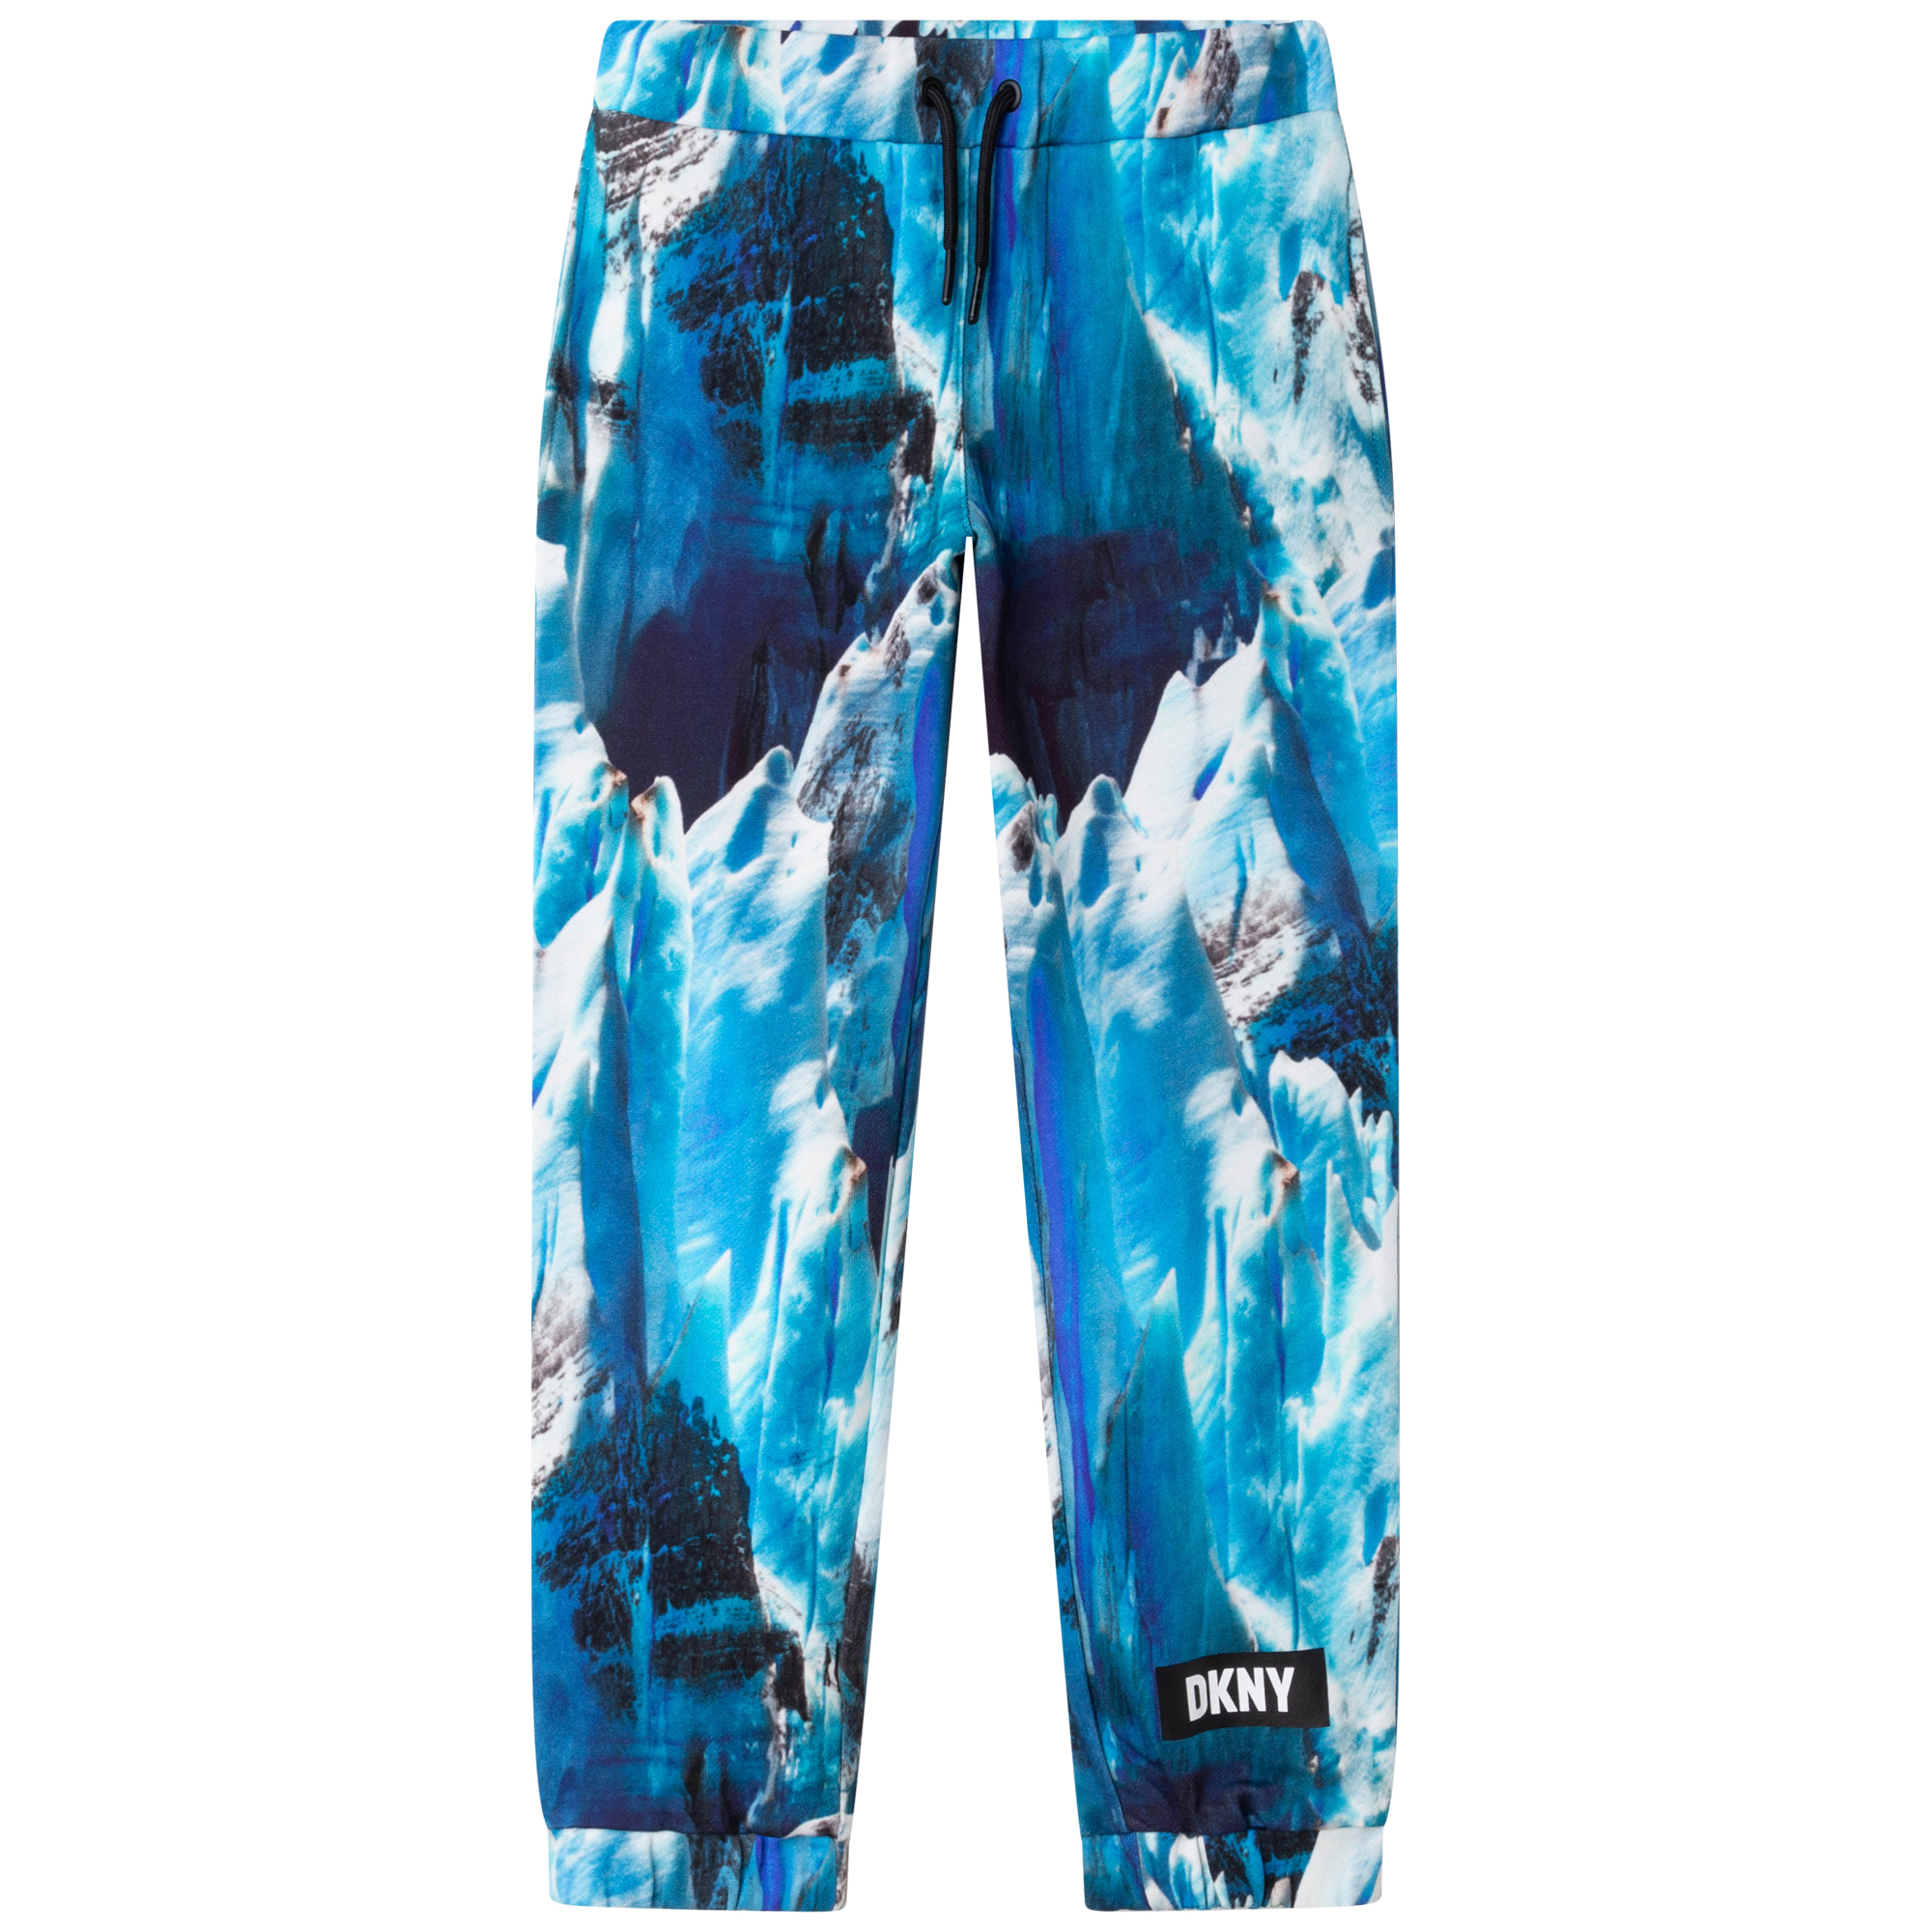 Fleece jogging trousers DKNY for BOY